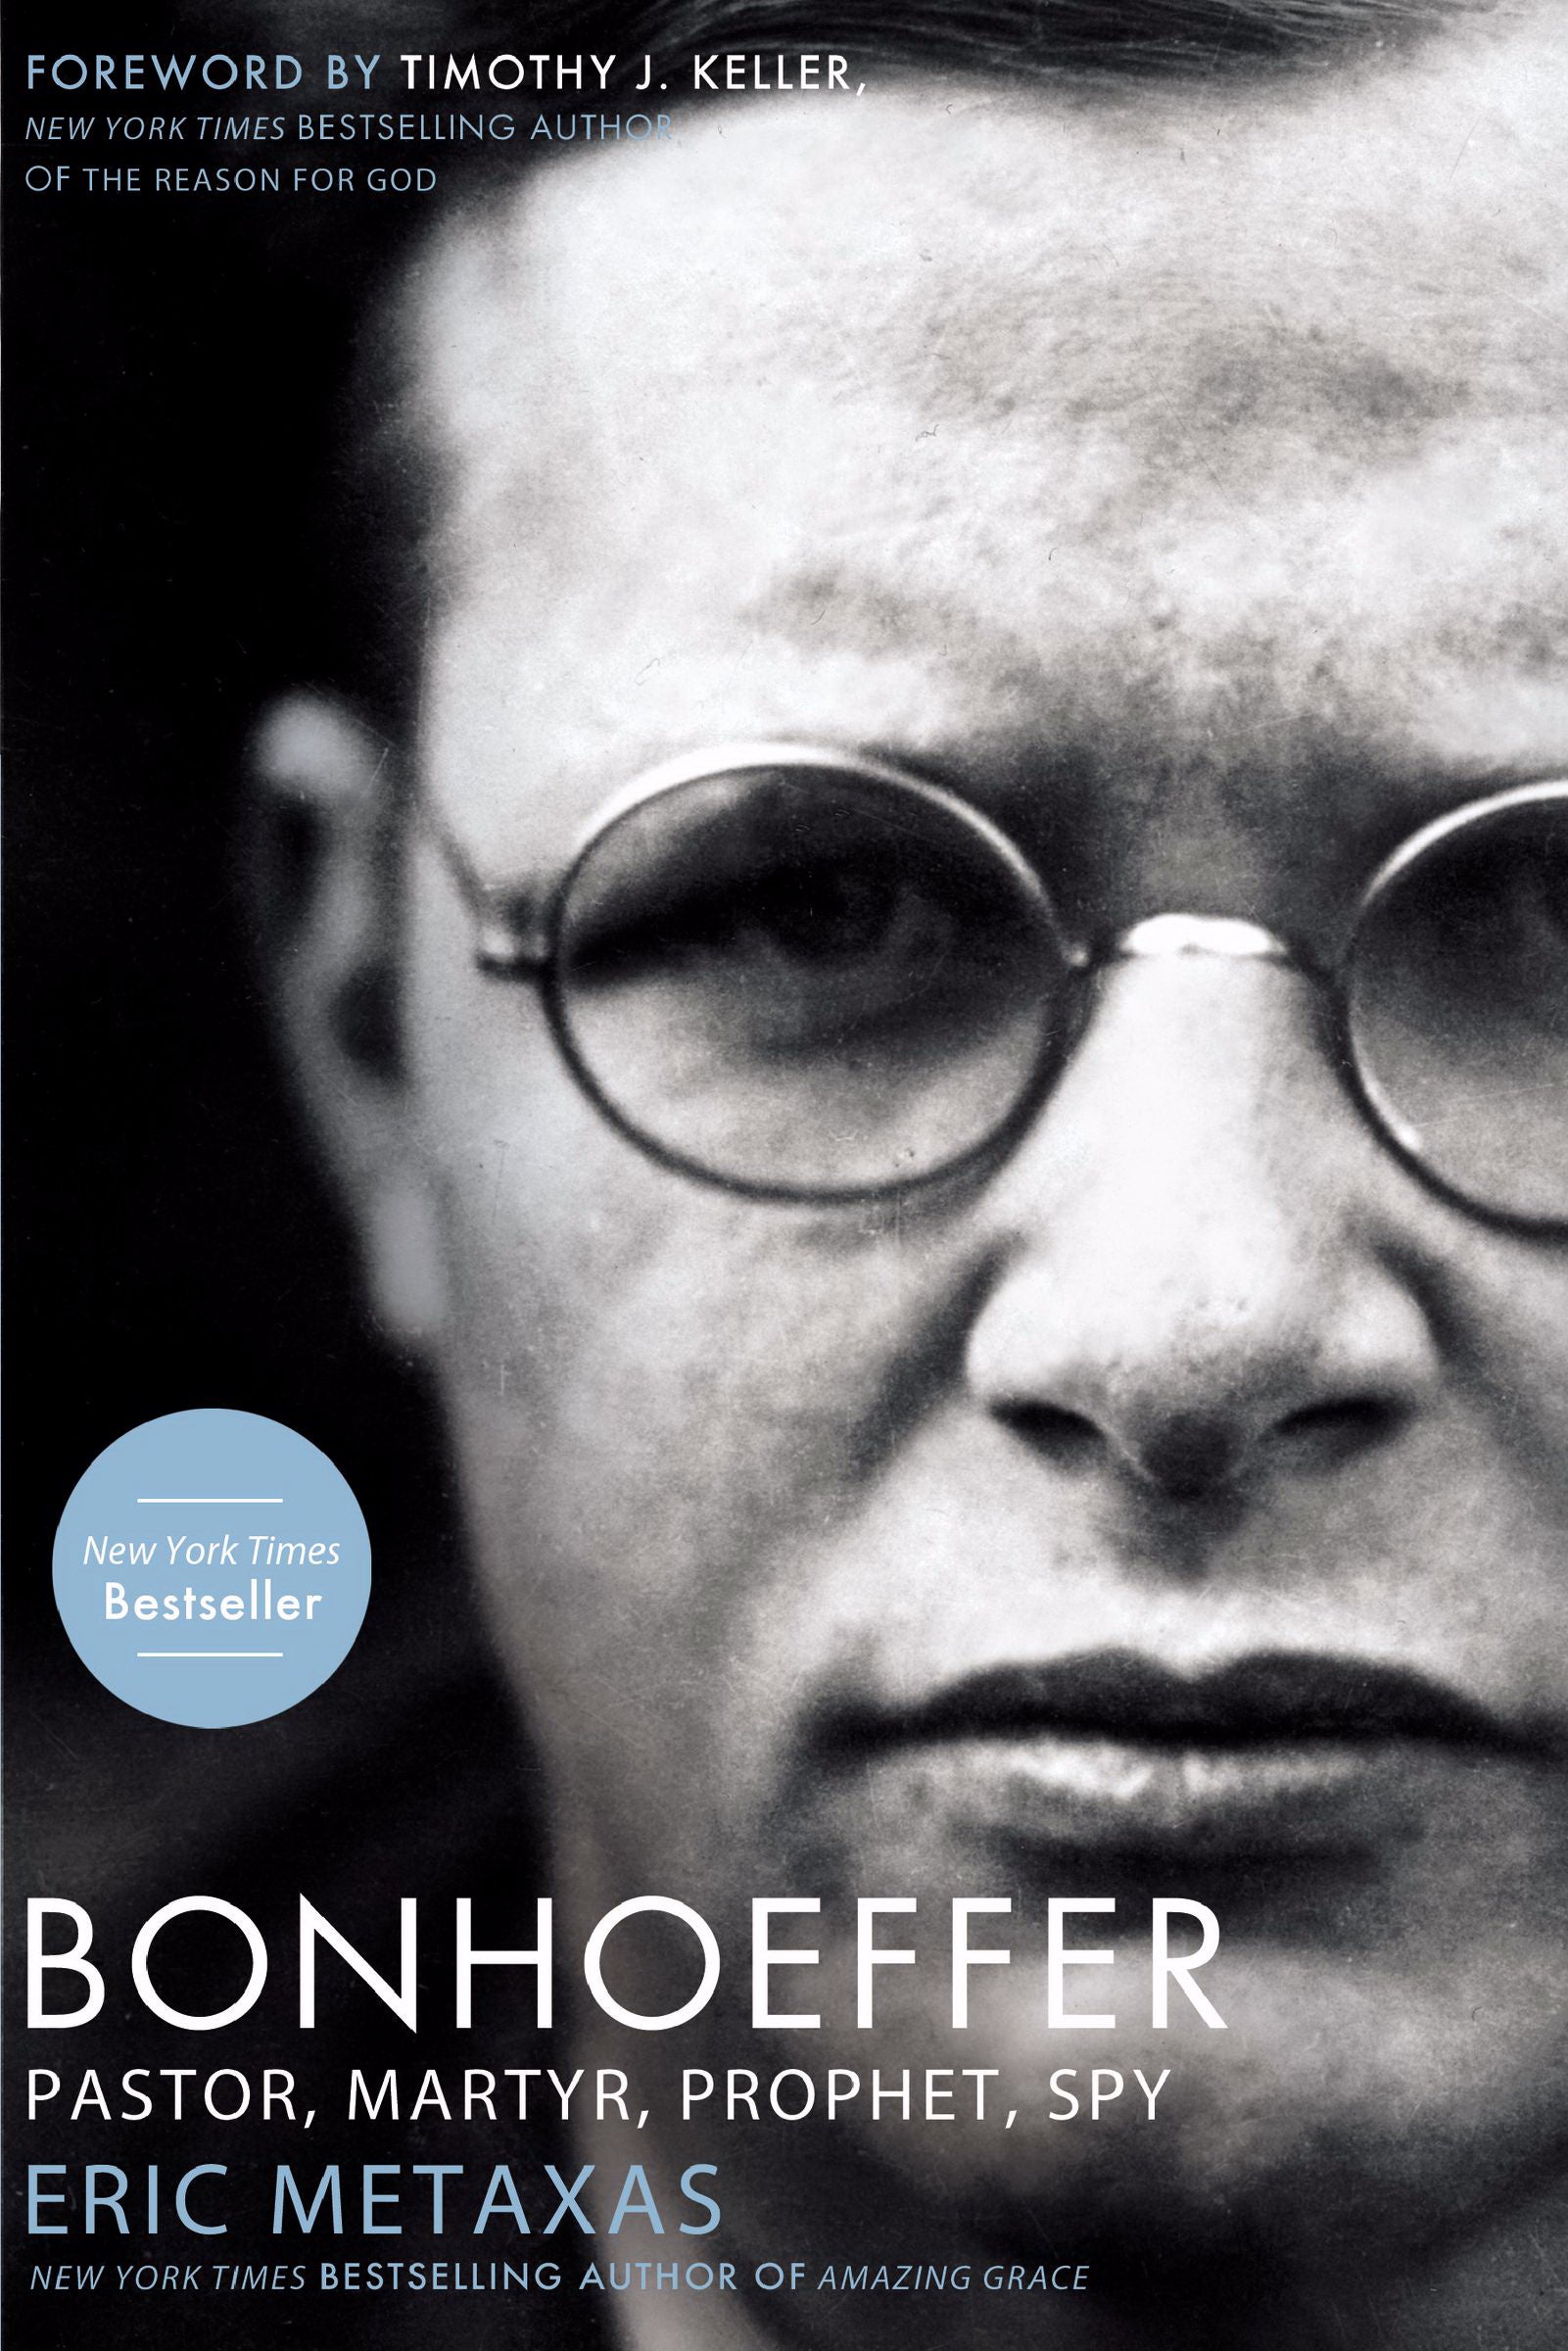 Image of Bonhoeffer other